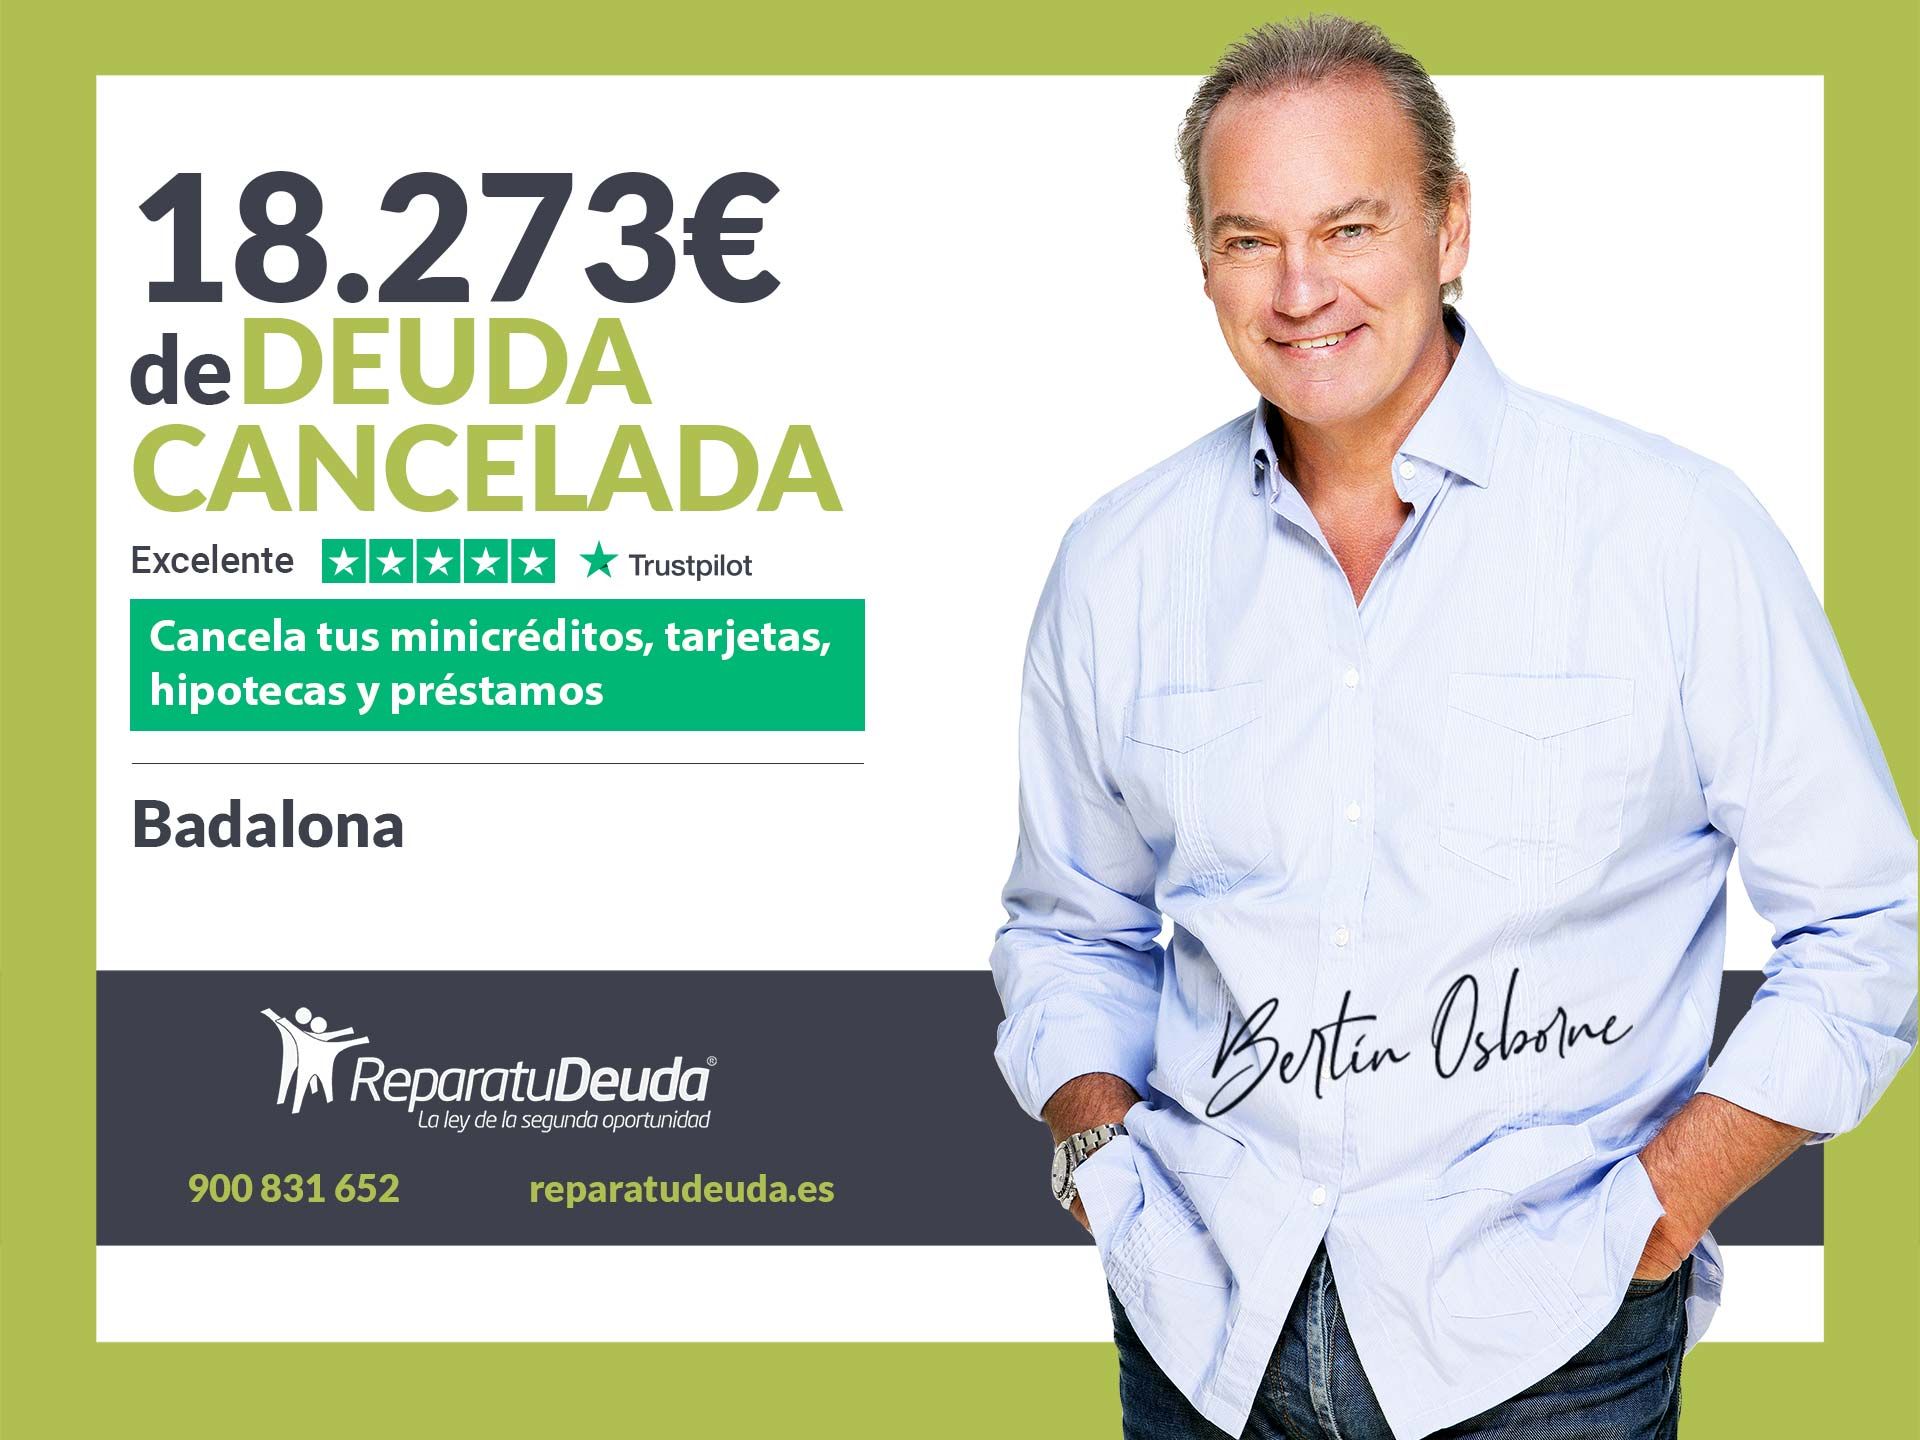 Repara tu Deuda Abogados cancela 18.273? en Badalona (Barcelona) con la Ley de Segunda Oportunidad